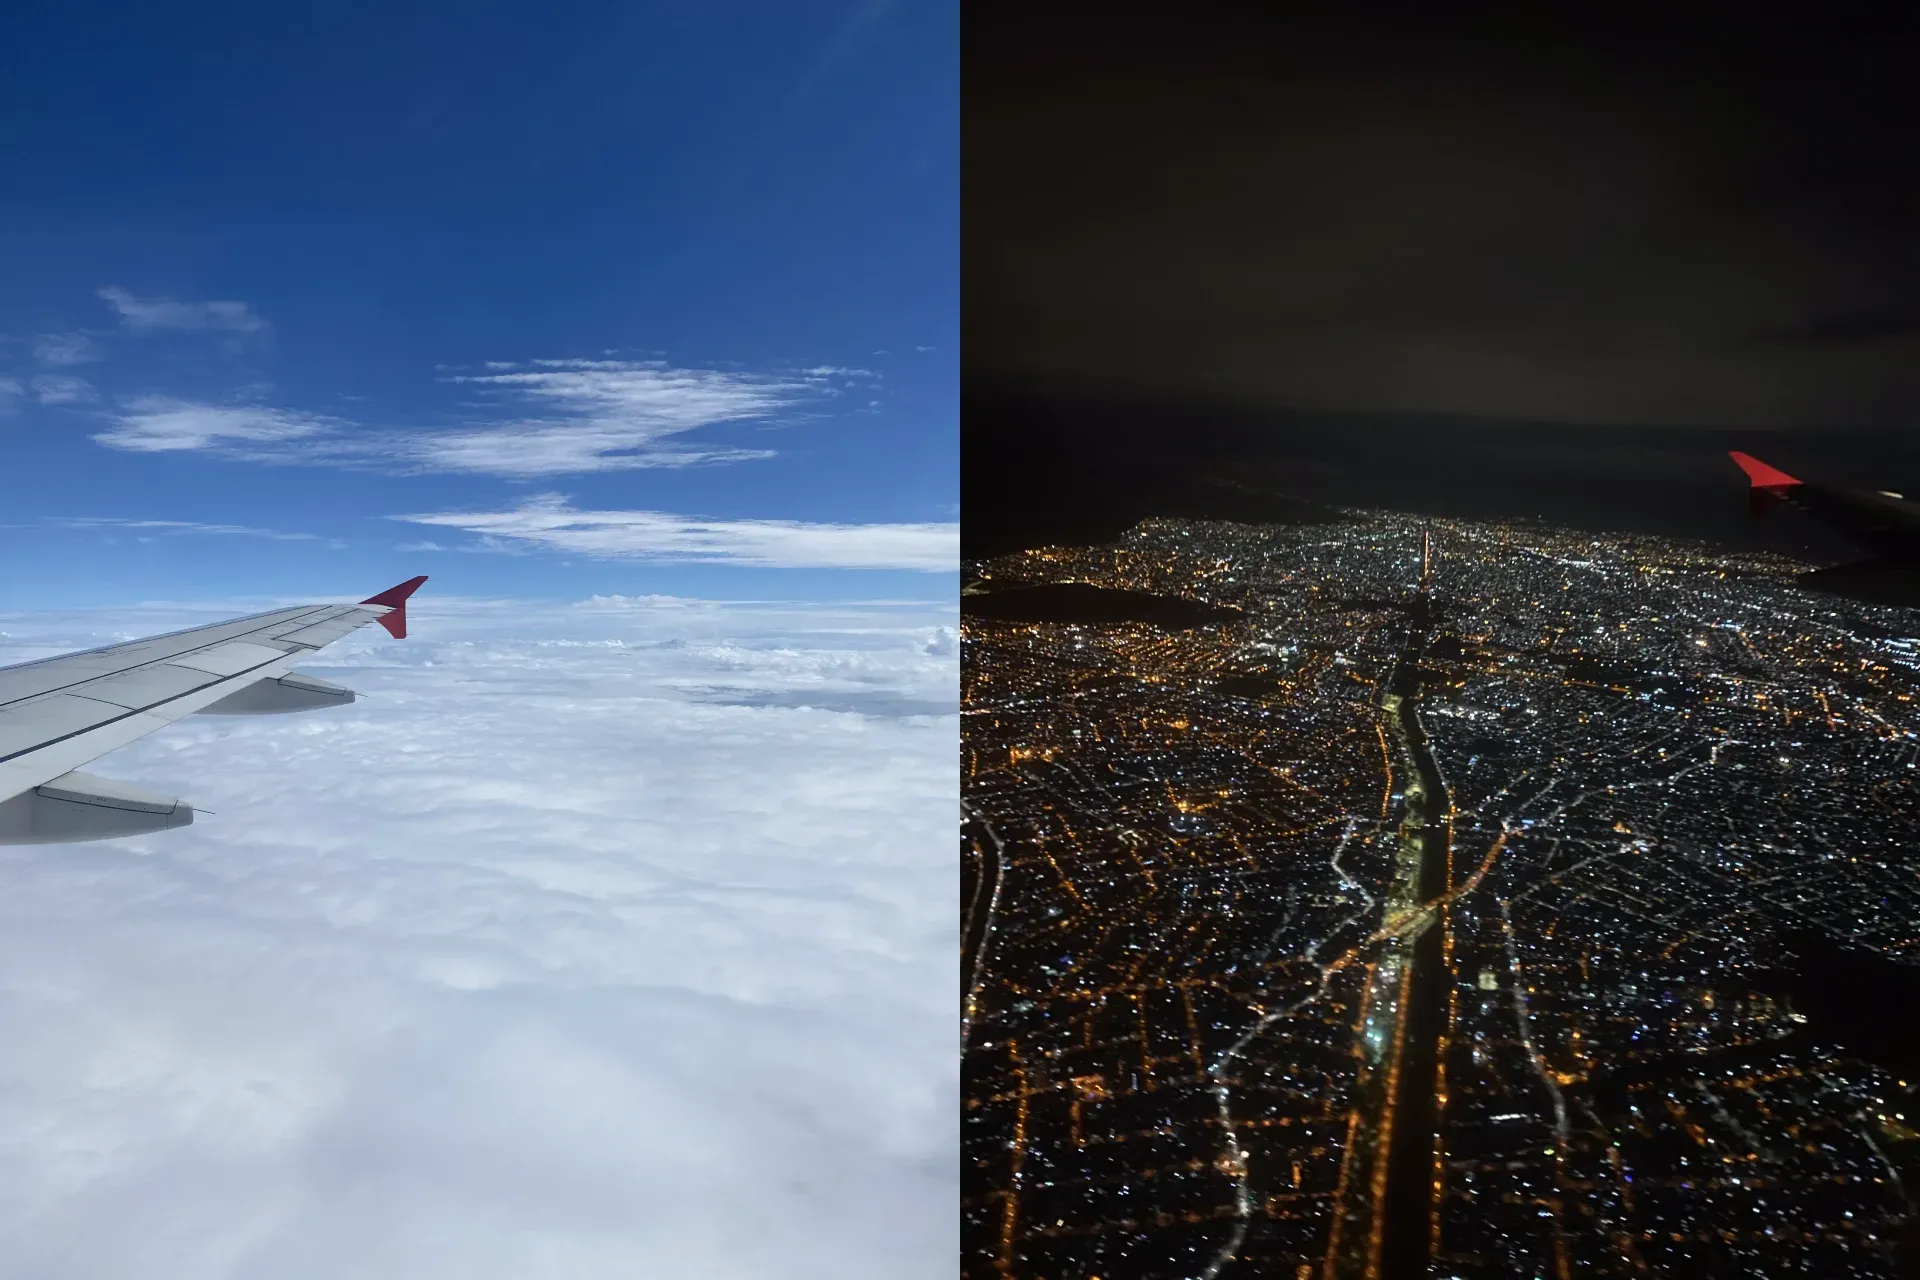 Fotos do céu visto da janela do avião pela manhã e à noite